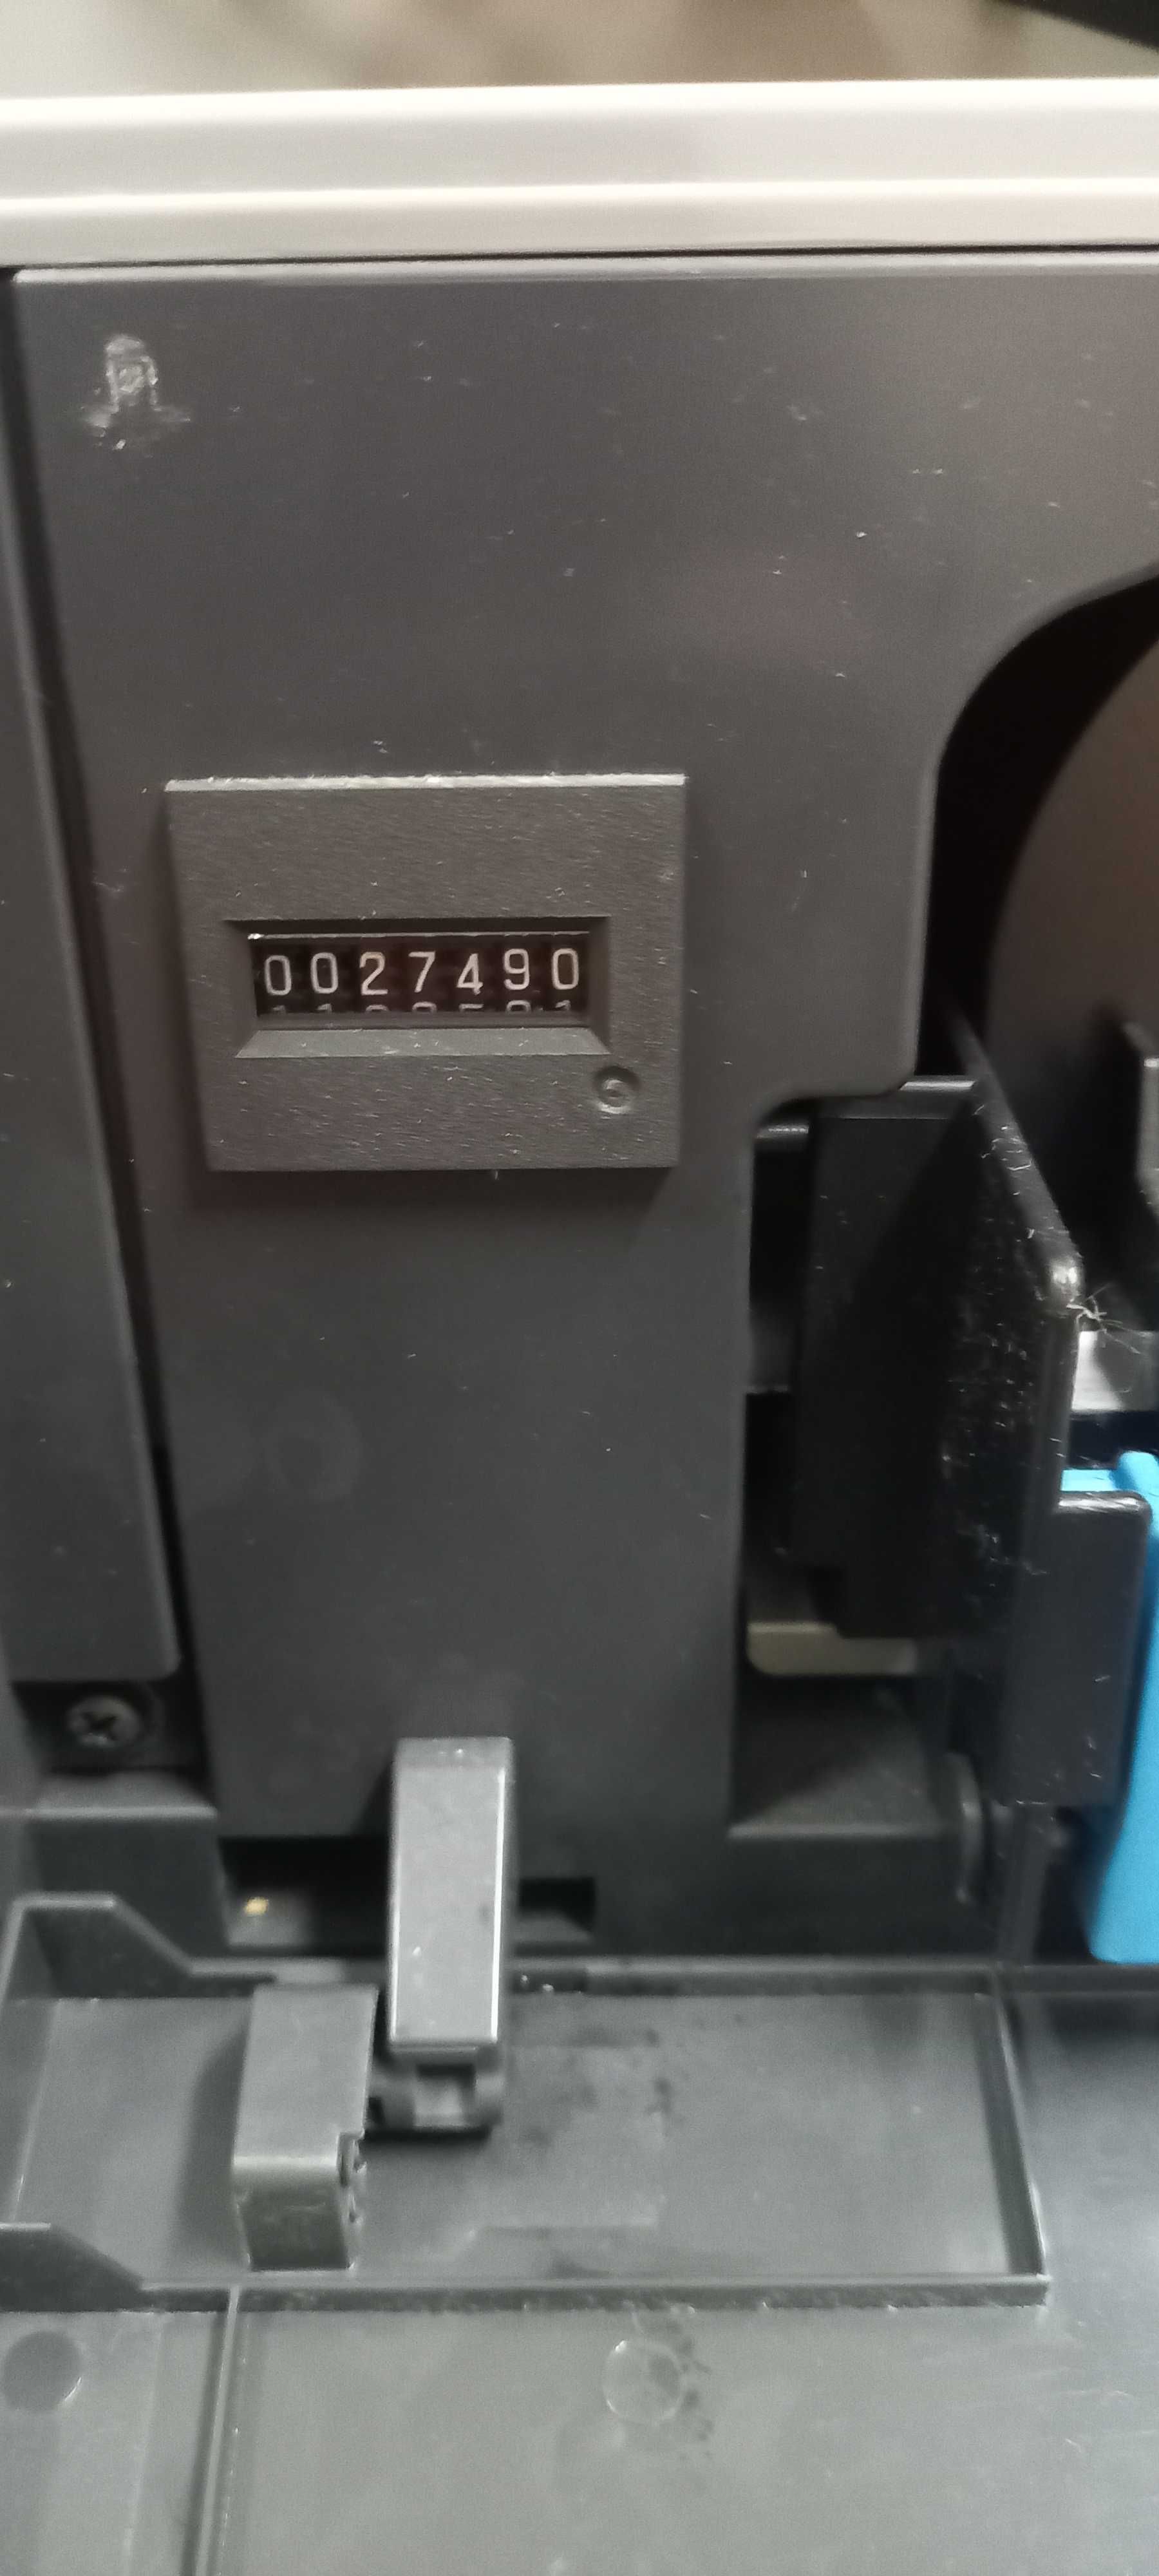 Konica minolta fotocopiadora